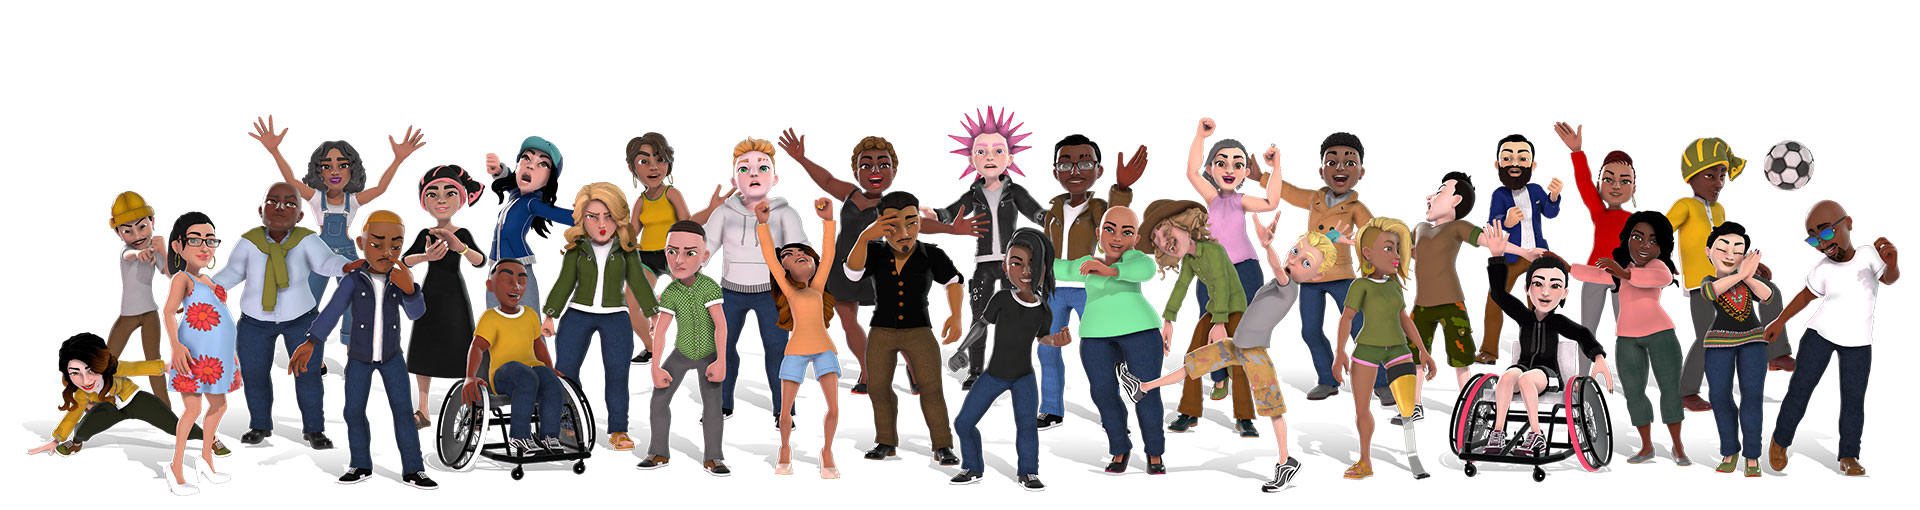 Avatares de Xbox que muestran un grupo diverso de personas con diferentes trajes